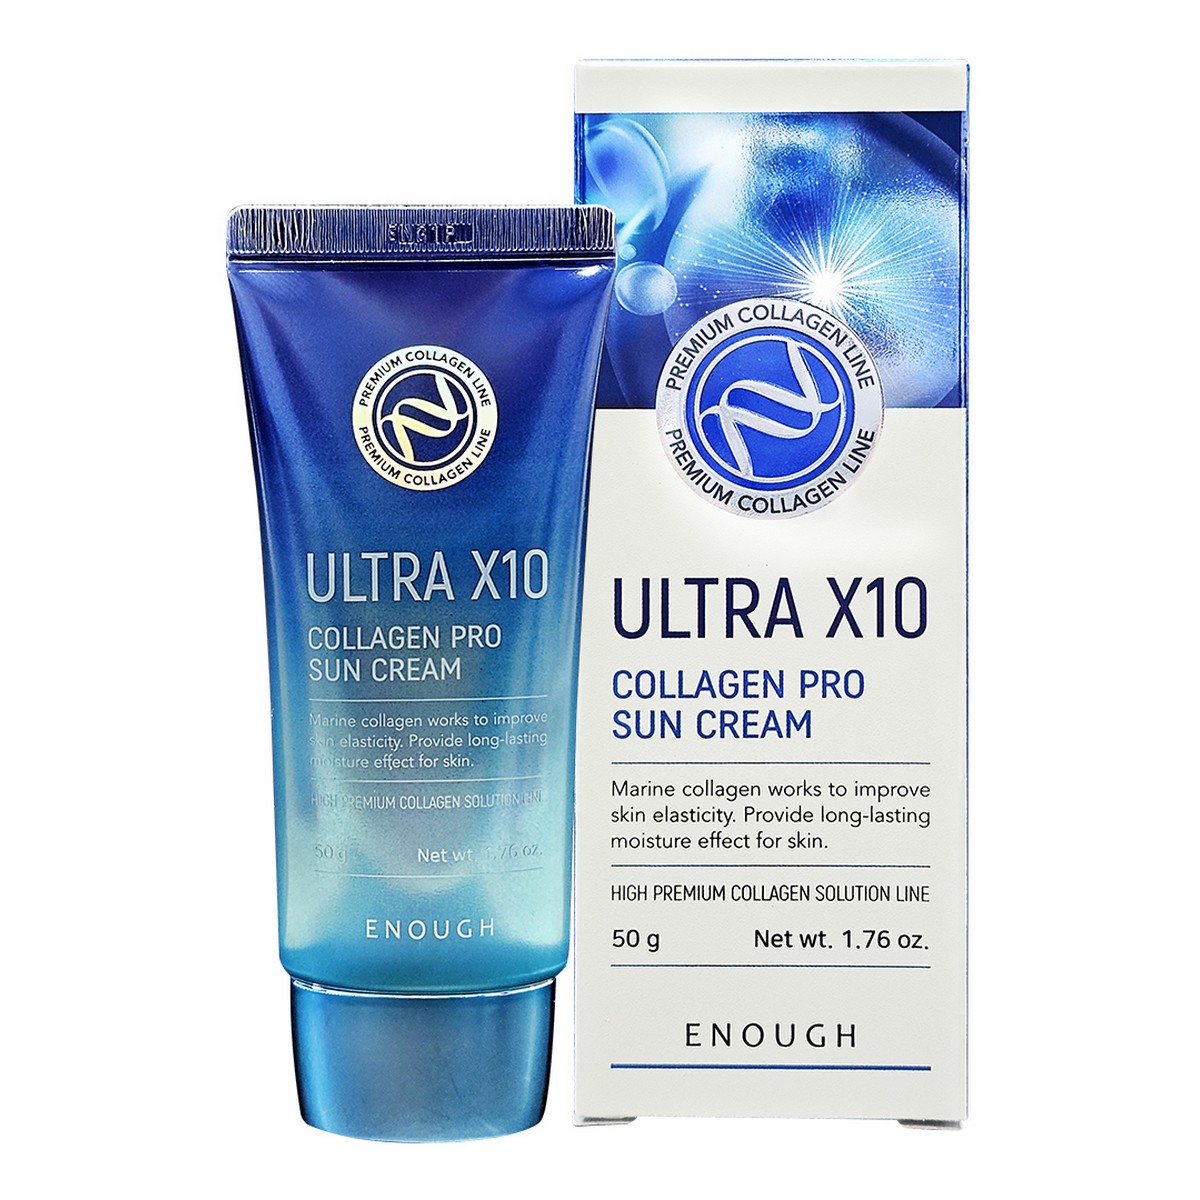 в наличии  Enough Увлажняющий солнцезащитный крем для лица с коллагеном / Ultra X10 Collagen Sun Cream SPF 50 Pa+++, 50 г